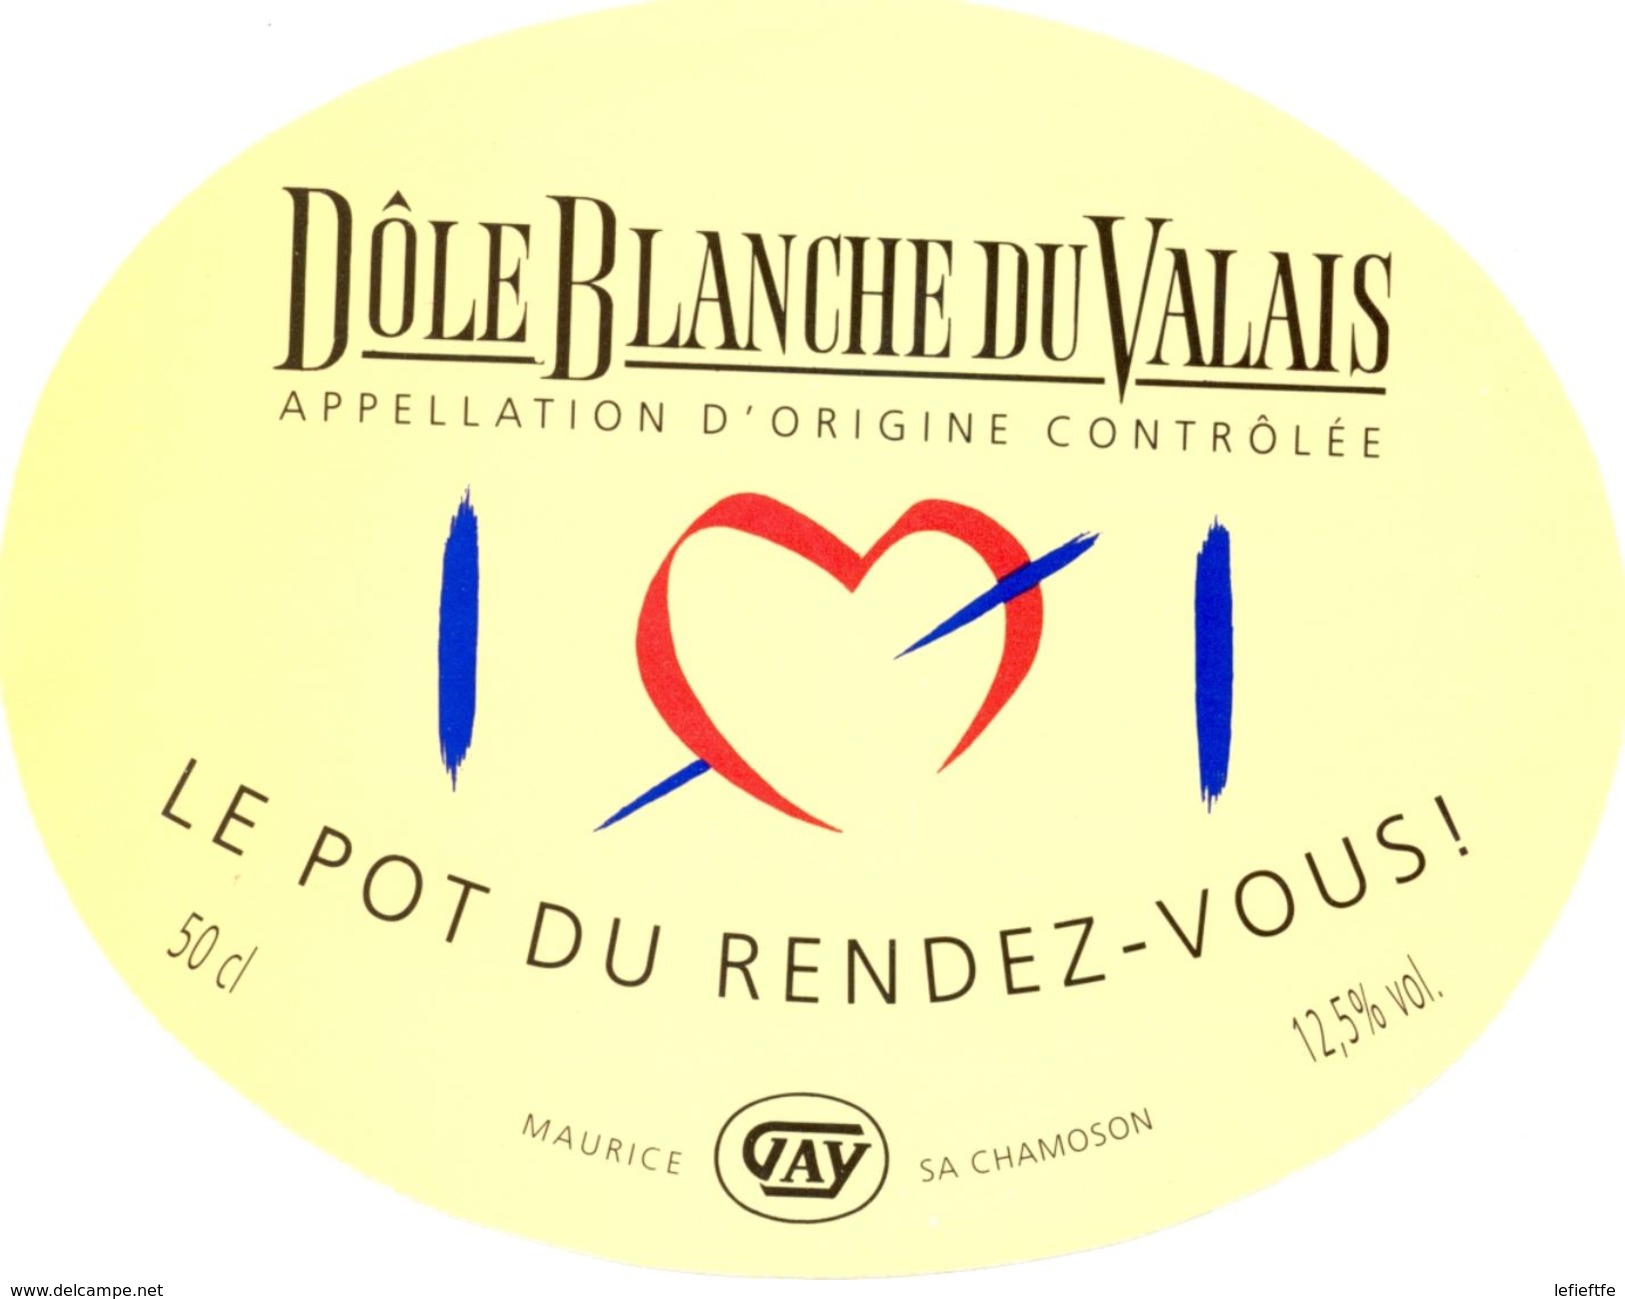 1509 - Suisse - Le Pot Du Rendez-Vous - Dôle Blanche Du Valais - A.O.C.  Maurice Gay - Chamoson - Witte Wijn